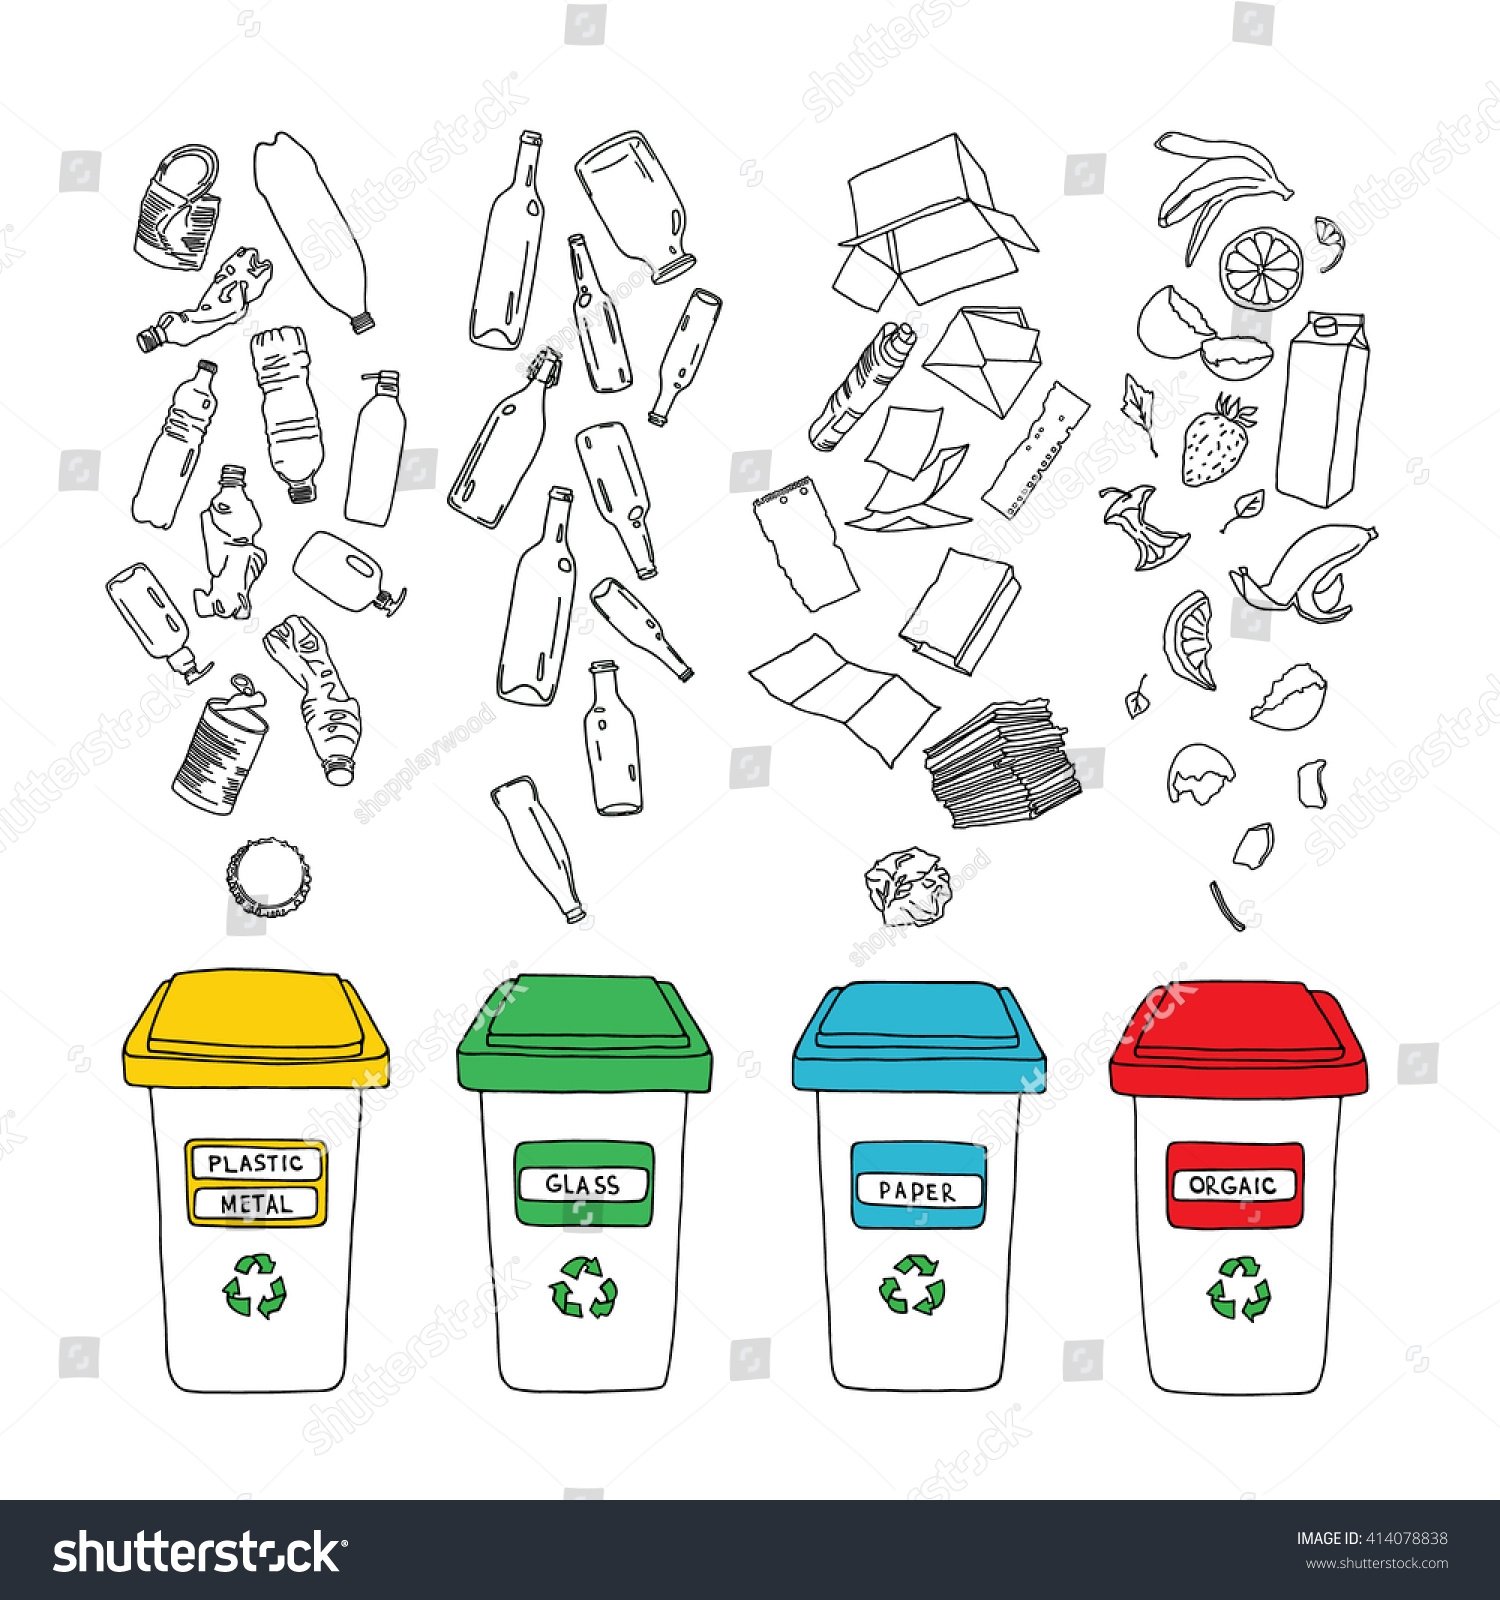 Сортировка мусора раскраска для детей